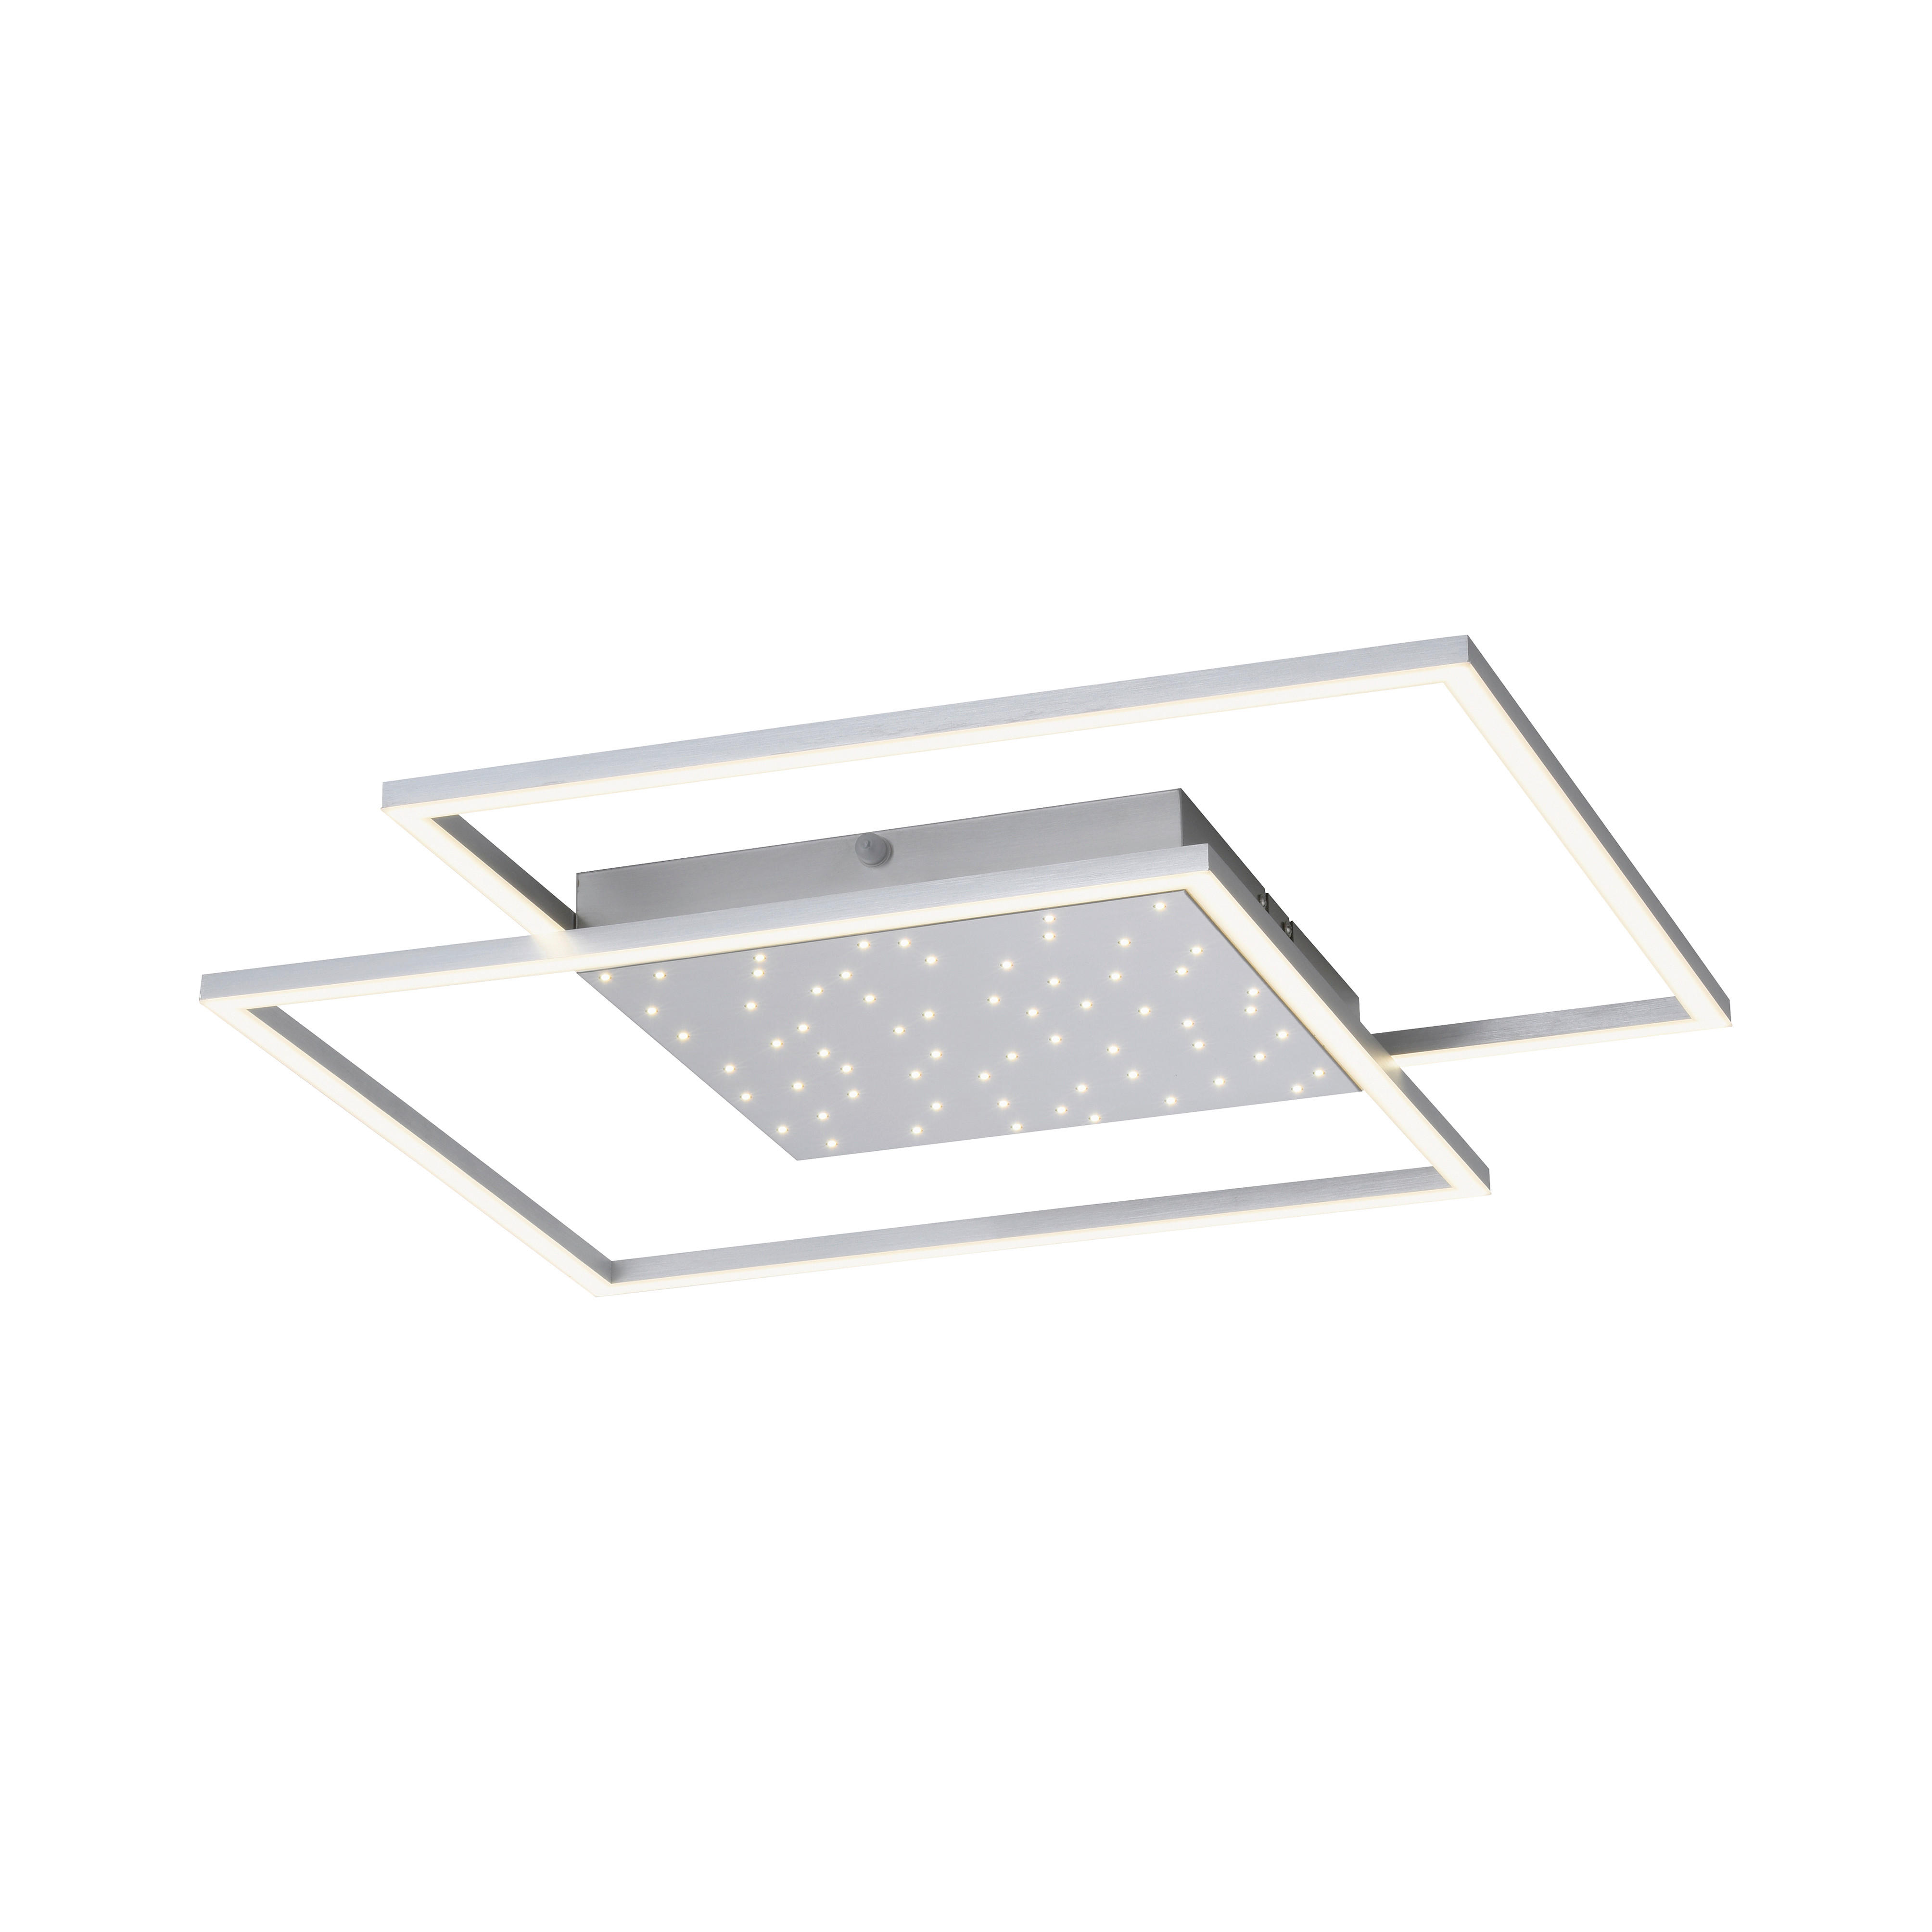 LED-DECKENLEUCHTE 9 W    67/67/5 cm  - Grau, Design, Metall (67/67/5cm) - Paul Neuhaus